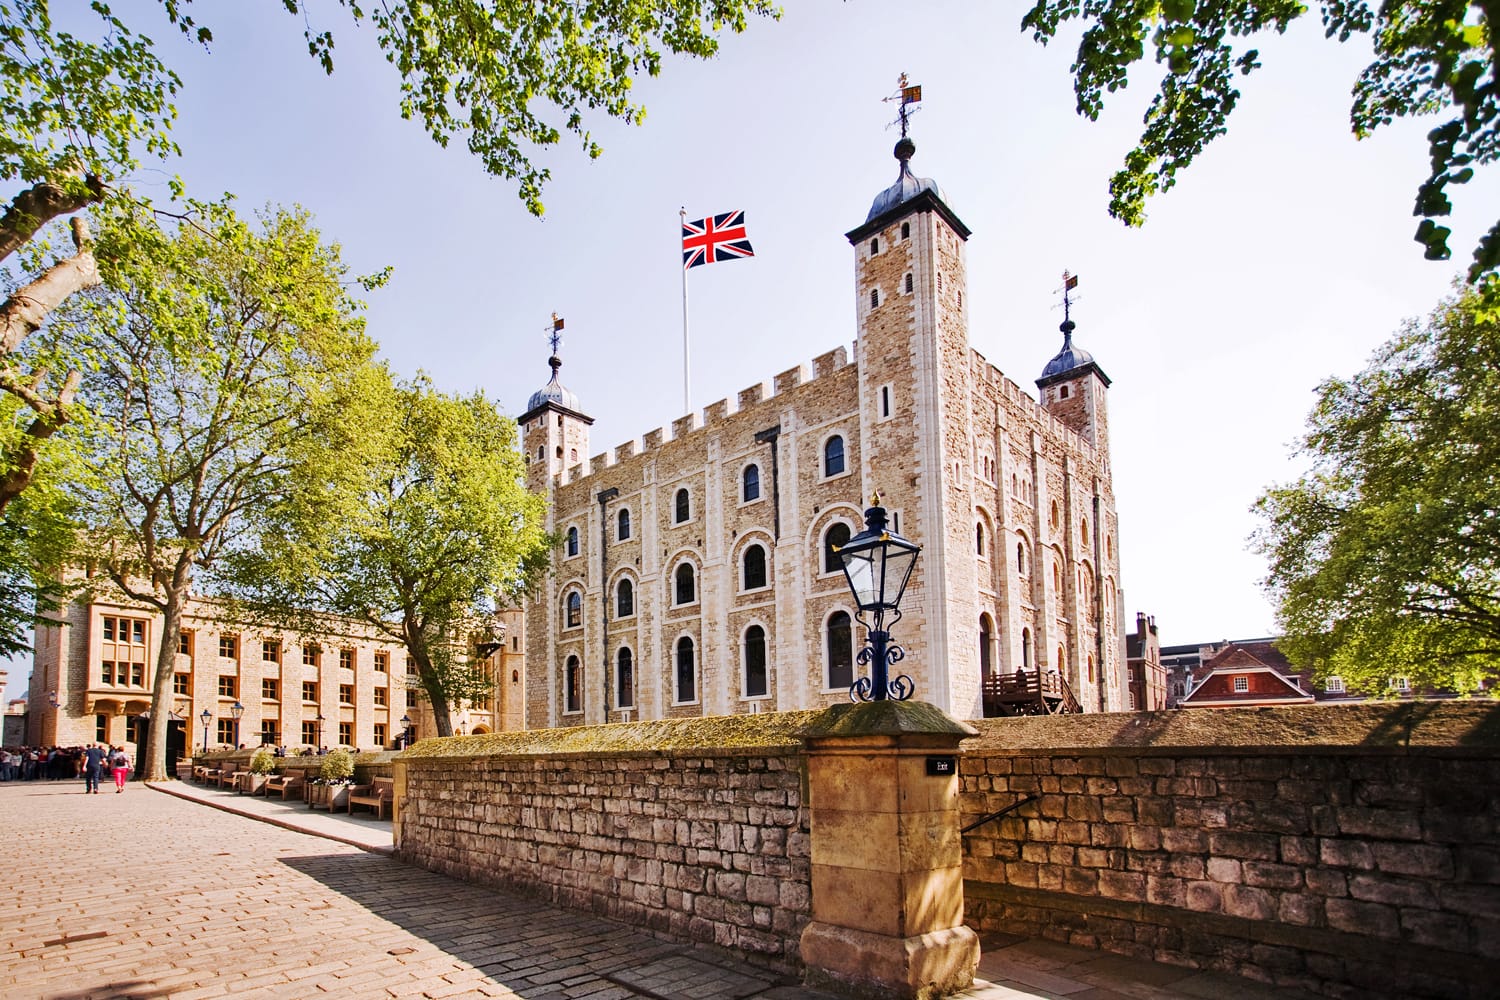 Πύργος του Λονδίνου - Μέρος των Ιστορικών Βασιλικών Ανακτόρων, που στεγάζει τα κοσμήματα του στέμματος.